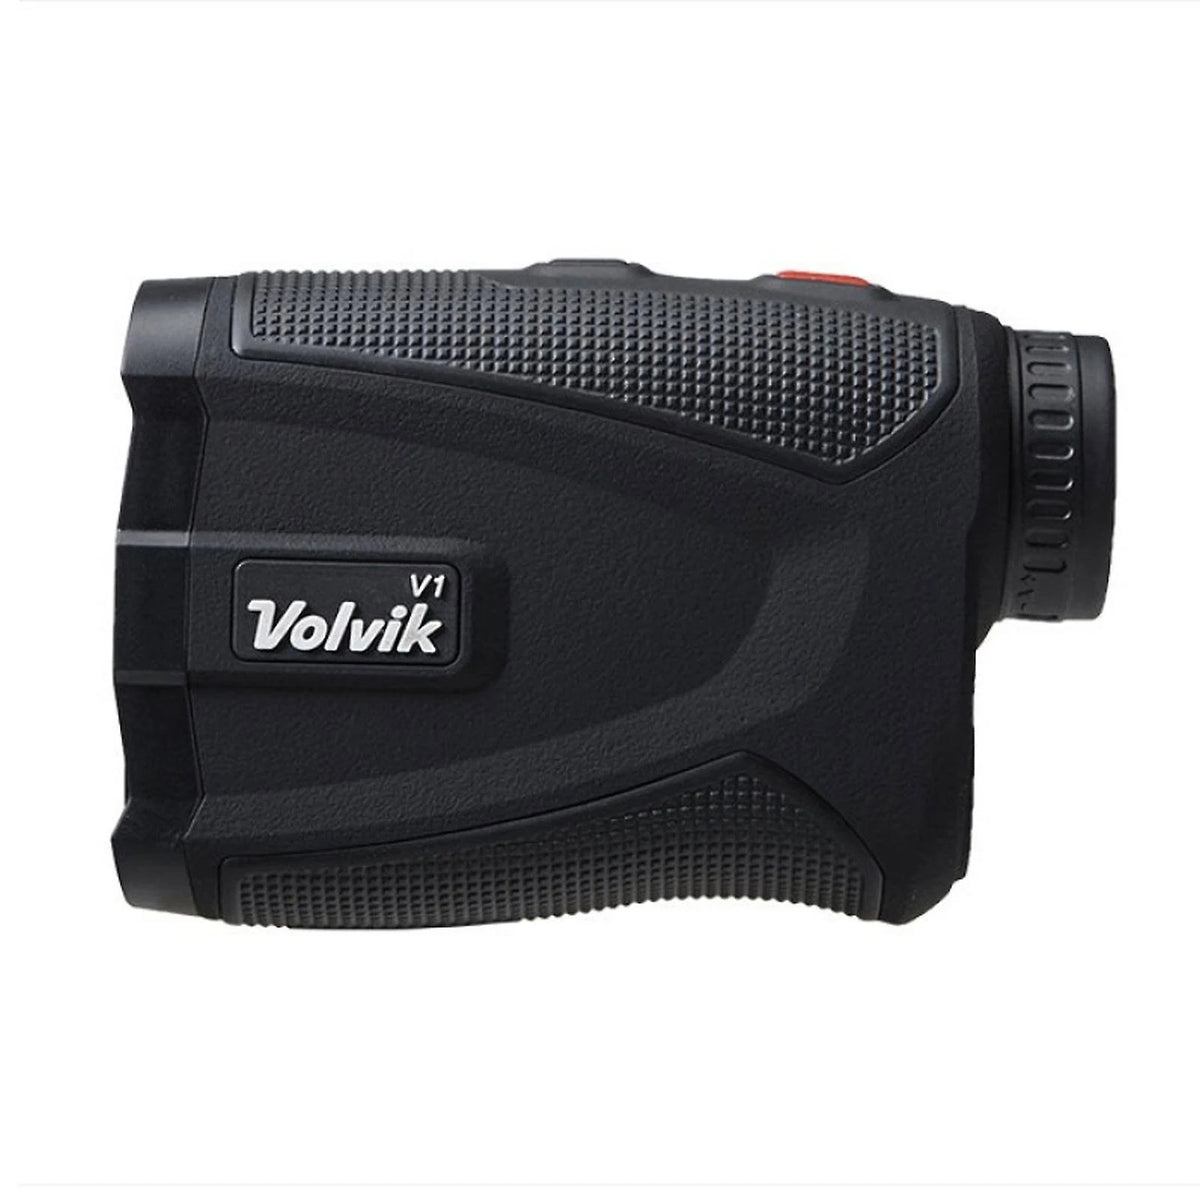 Vovik V1 Laser Range Finder - Afstandmeter